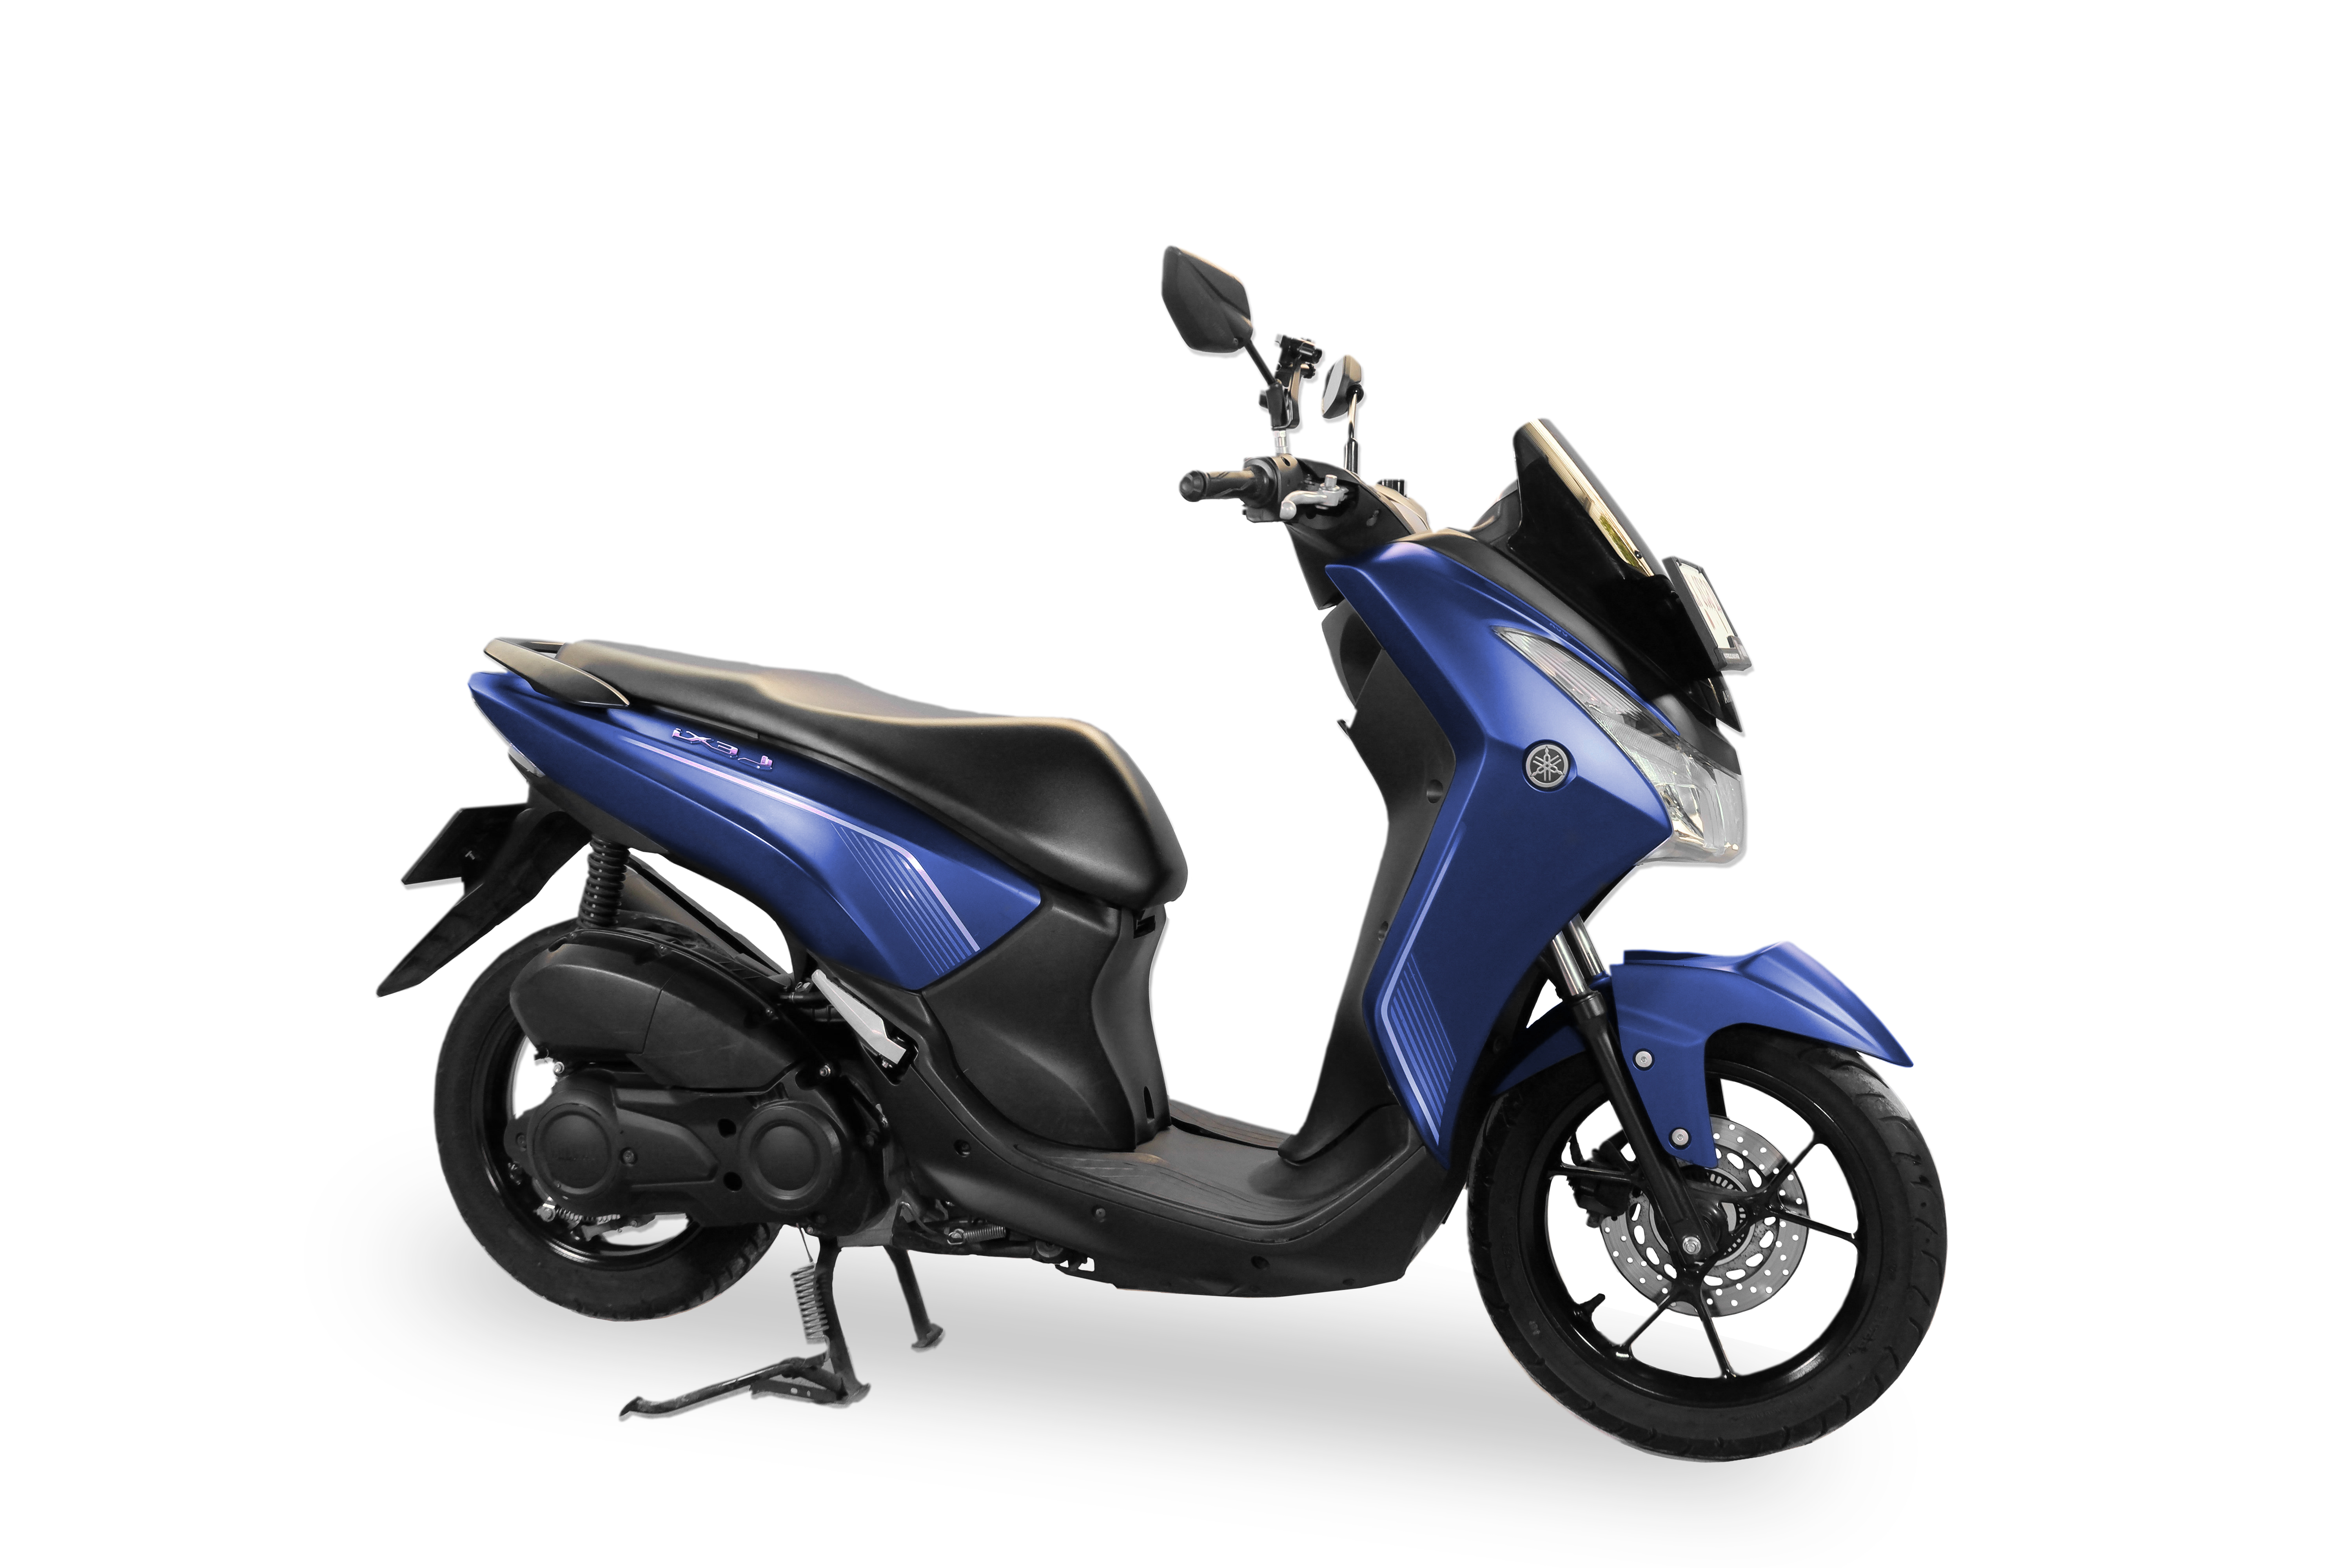 Mieten Sie einen Yamaha Lexi 125 (blau)